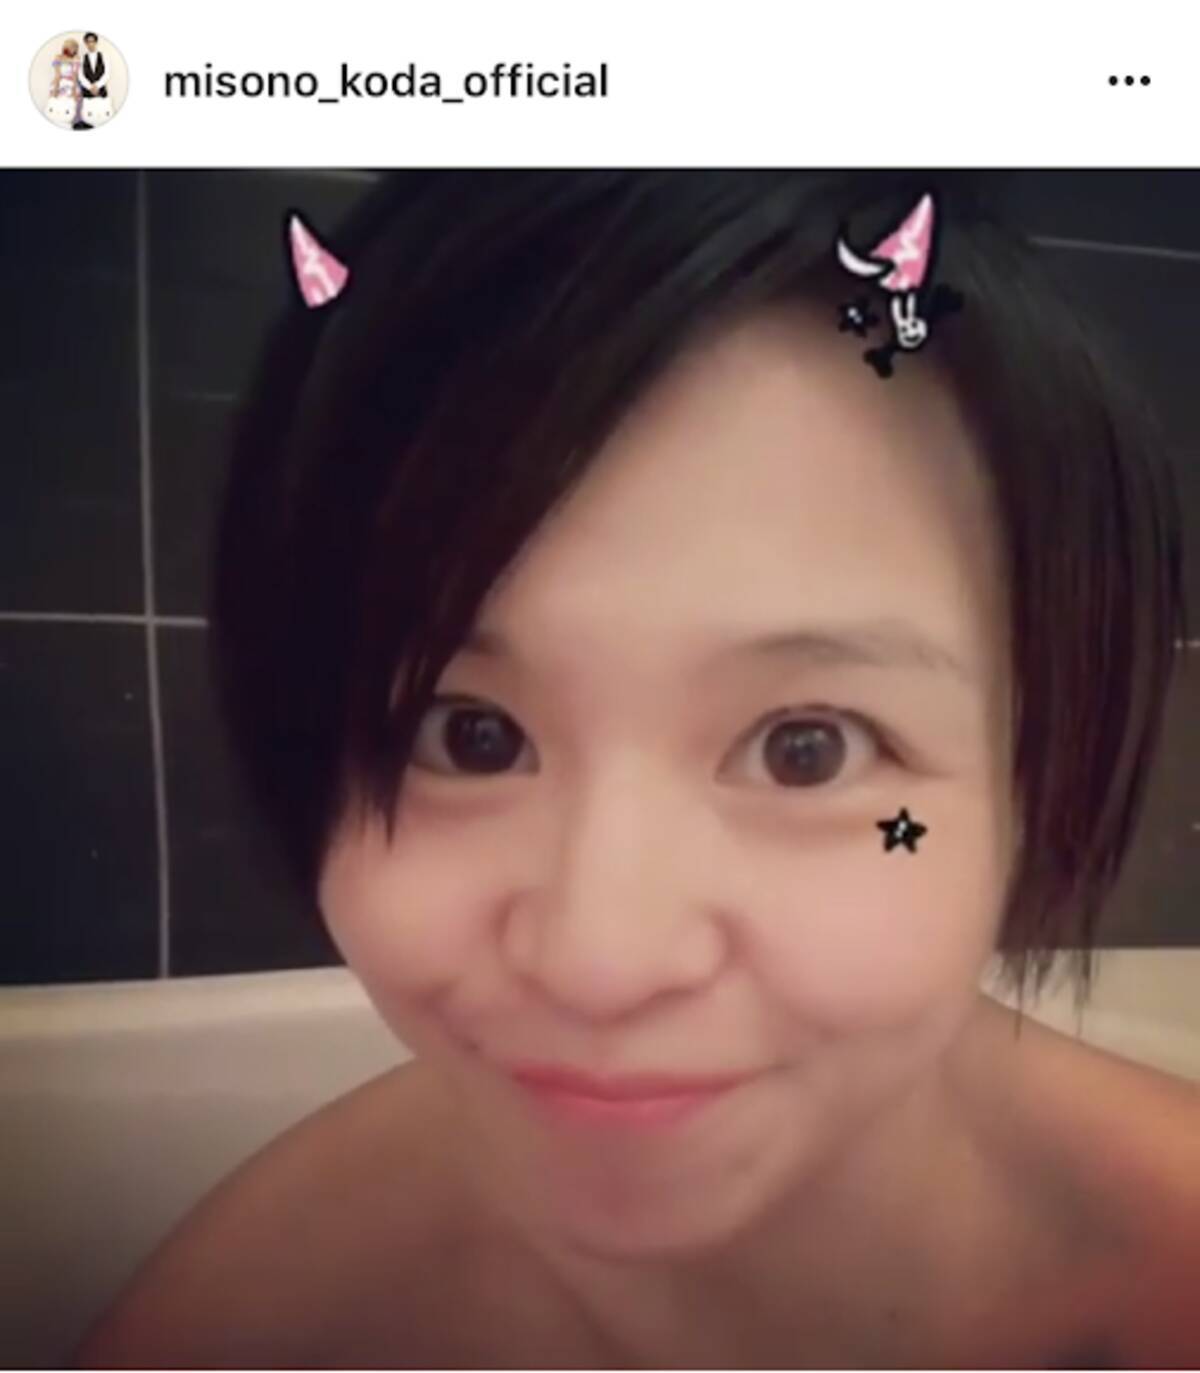 Misono 入浴中の歌唱動画に すぴっん美人 歌上手い と反響 18年5月11日 エキサイトニュース